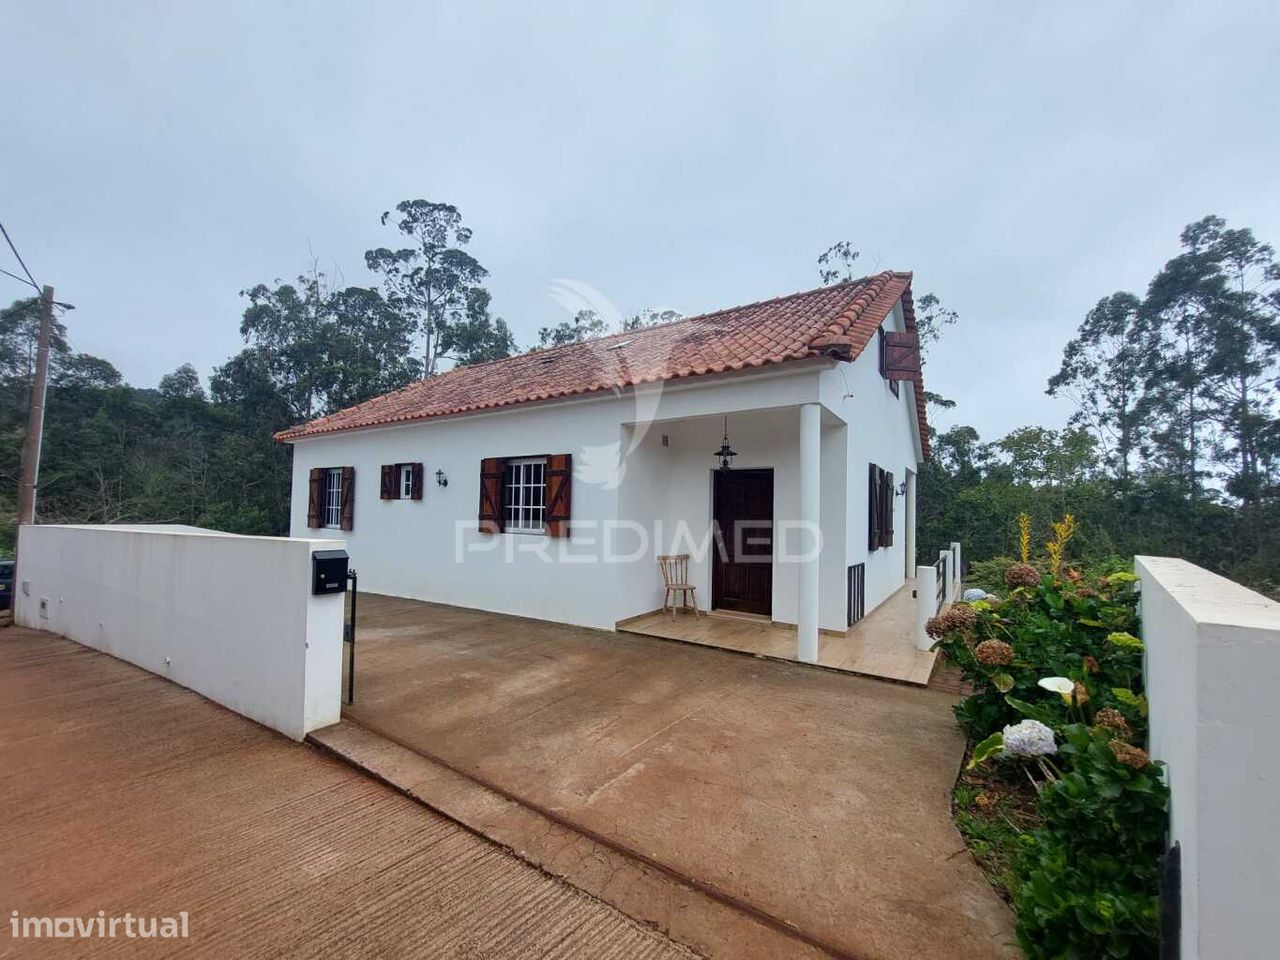 Casa Duplex T2 em São Jorge - Ilha da Madeira